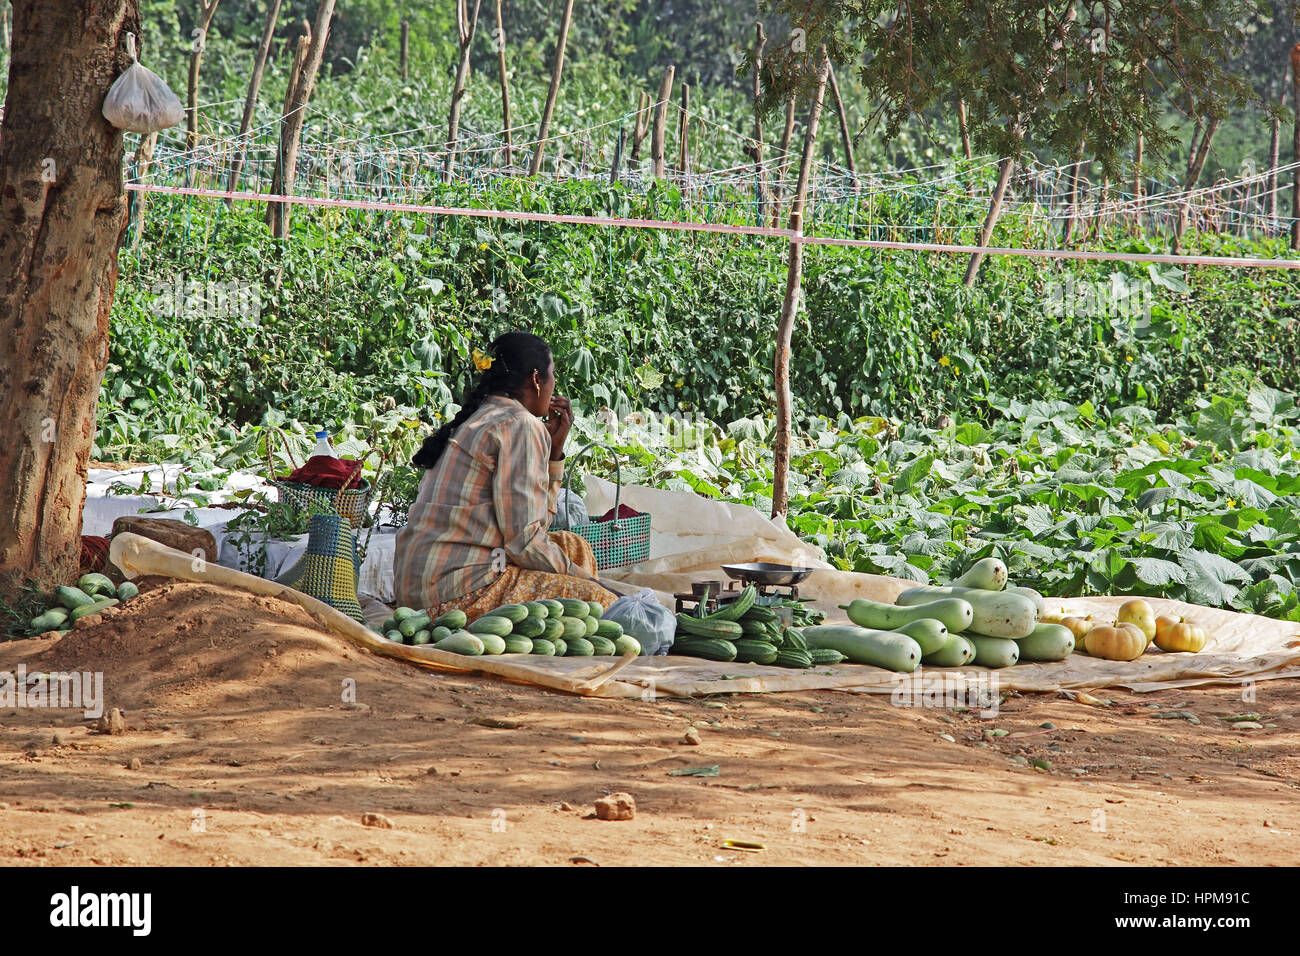 Unidentified donna indiana agricoltore la vendita di verdure fresche spiumate presso l'azienda. Il prodotto viene raccolto dal giardino vegetale nelle vicinanze. Foto Stock